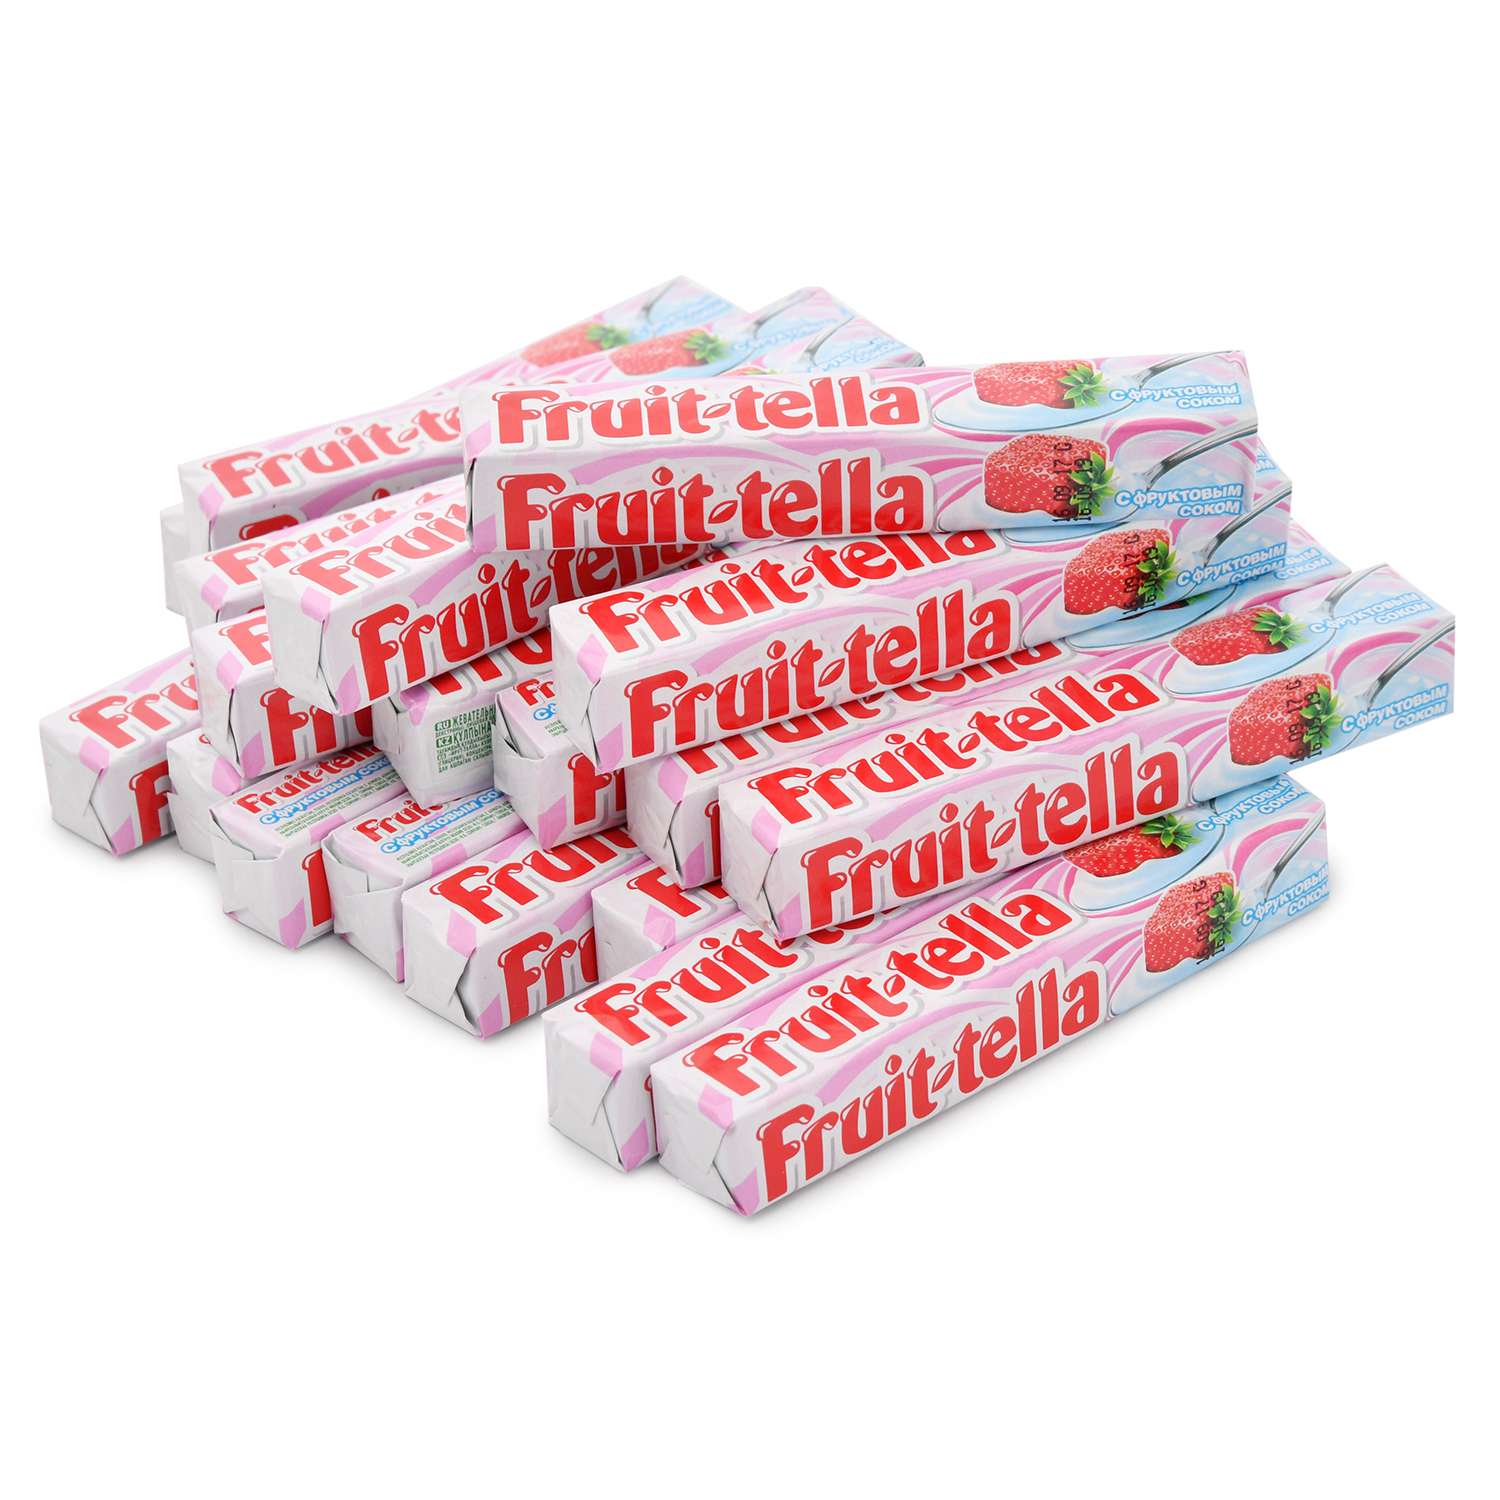 Жевательная конфета Фруттелла йогурт42.5/41г - фото 3